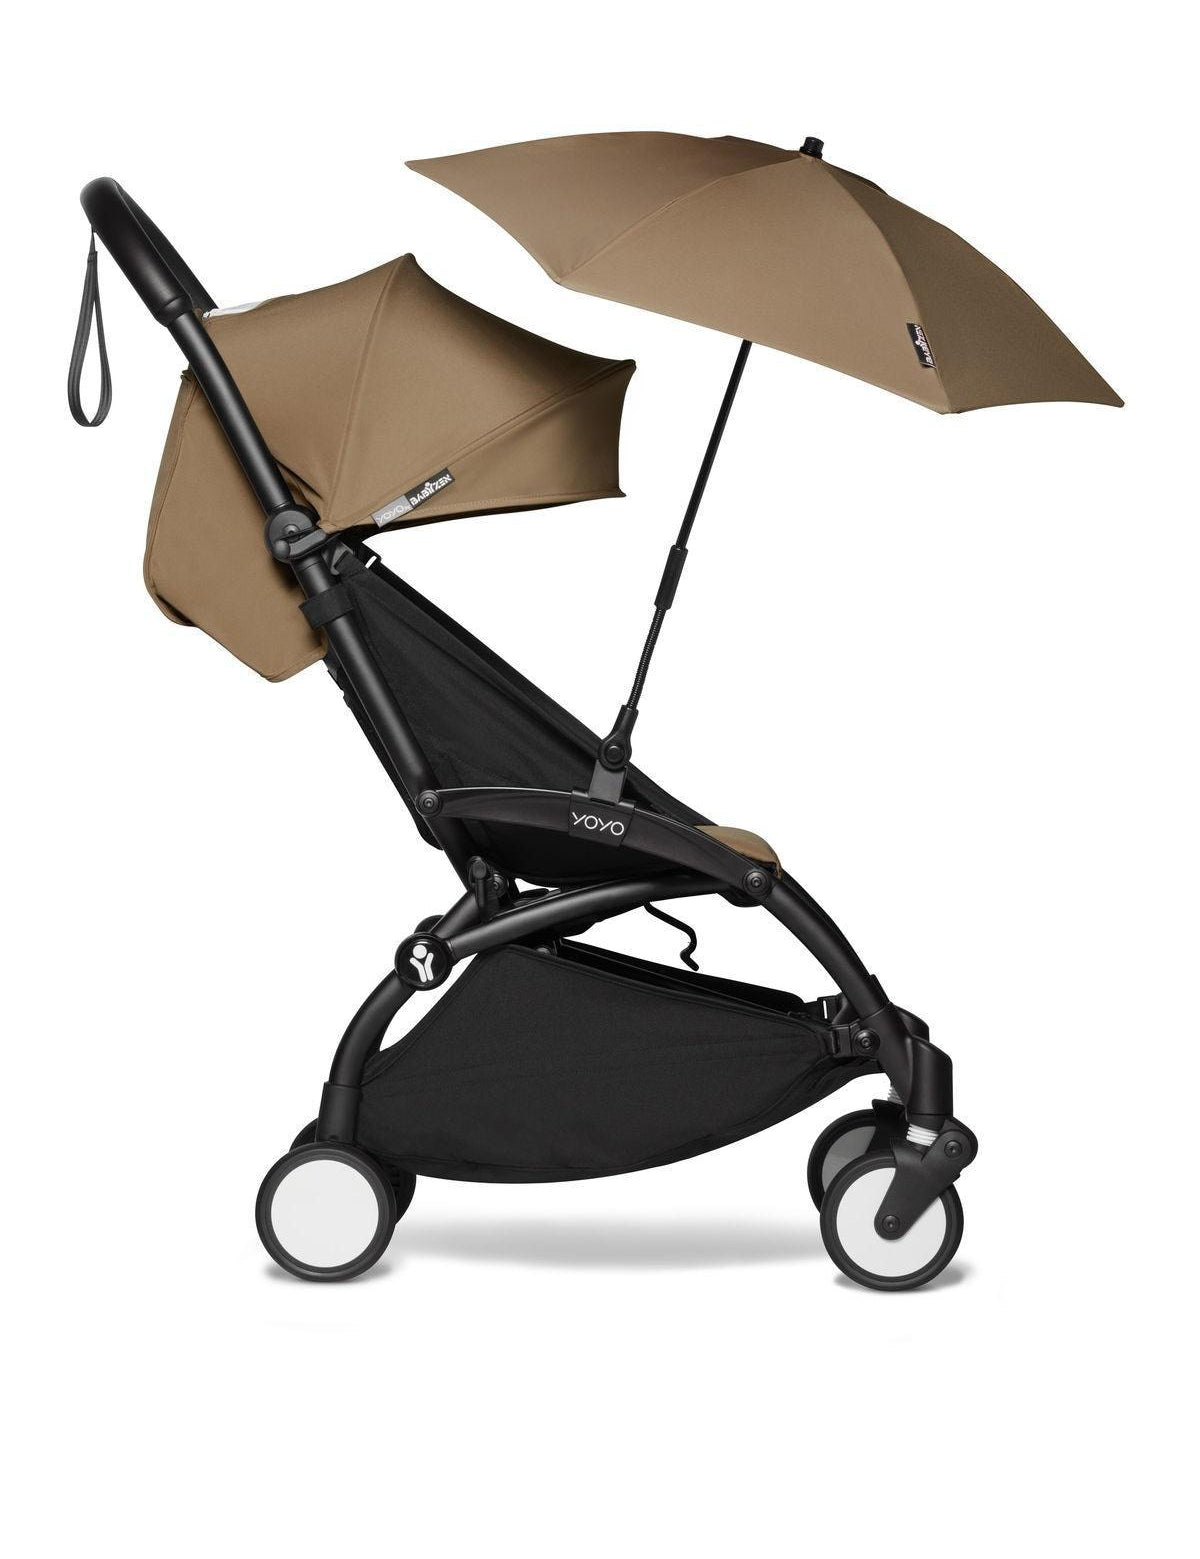 Babyzen Stroller Accessories for Kids